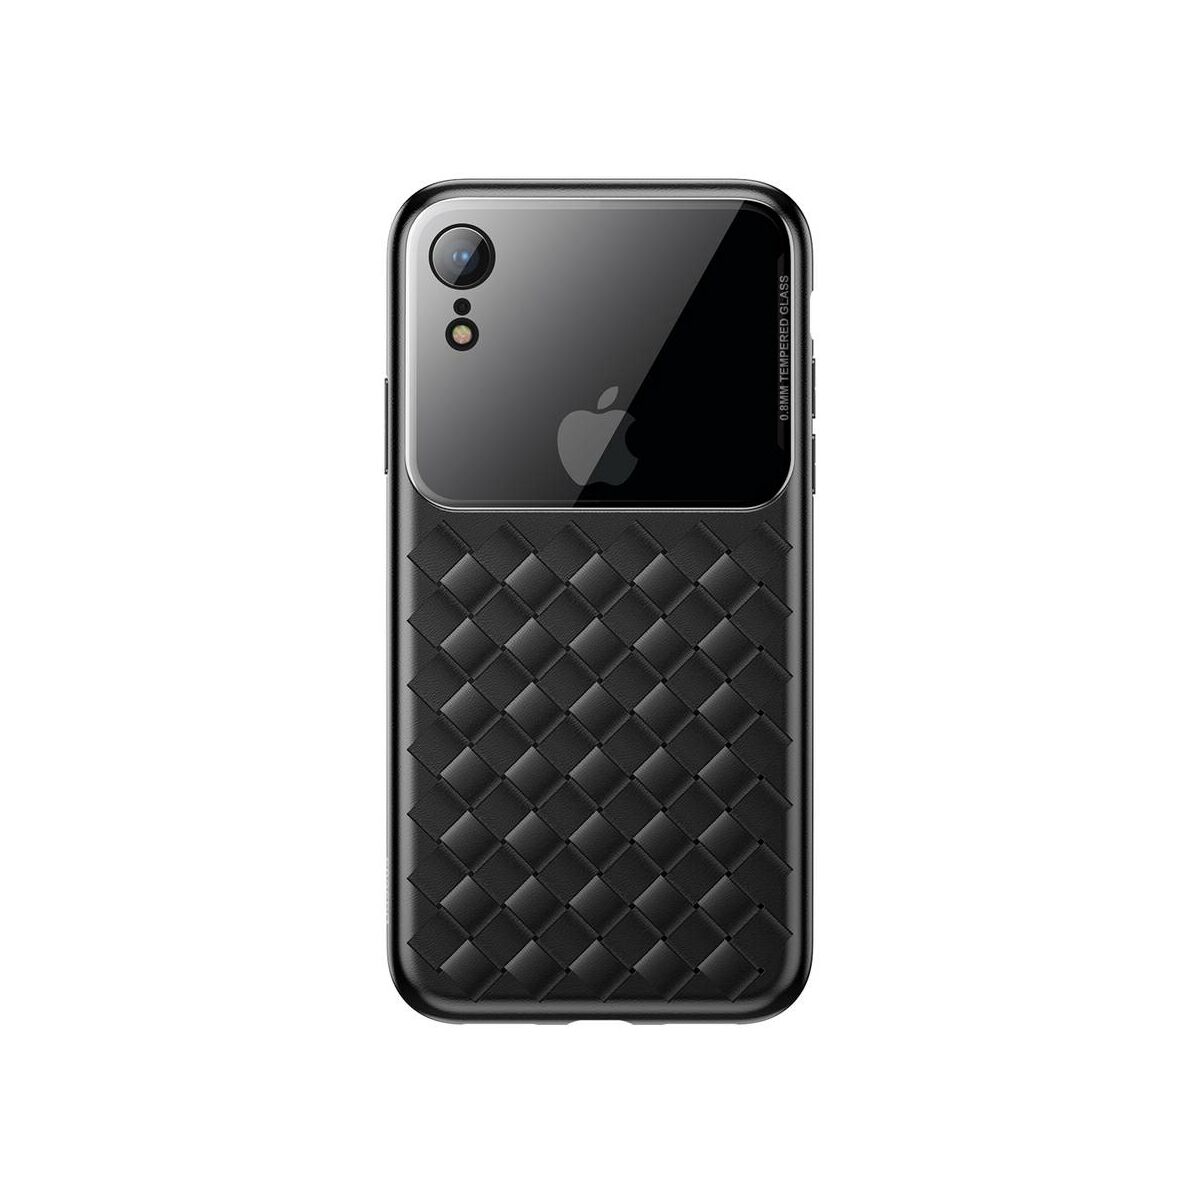 Kép 10/10 - Baseus iPhone XR üveg & tok, BV Weaving, fekete (WIAPIPH61-BL01)